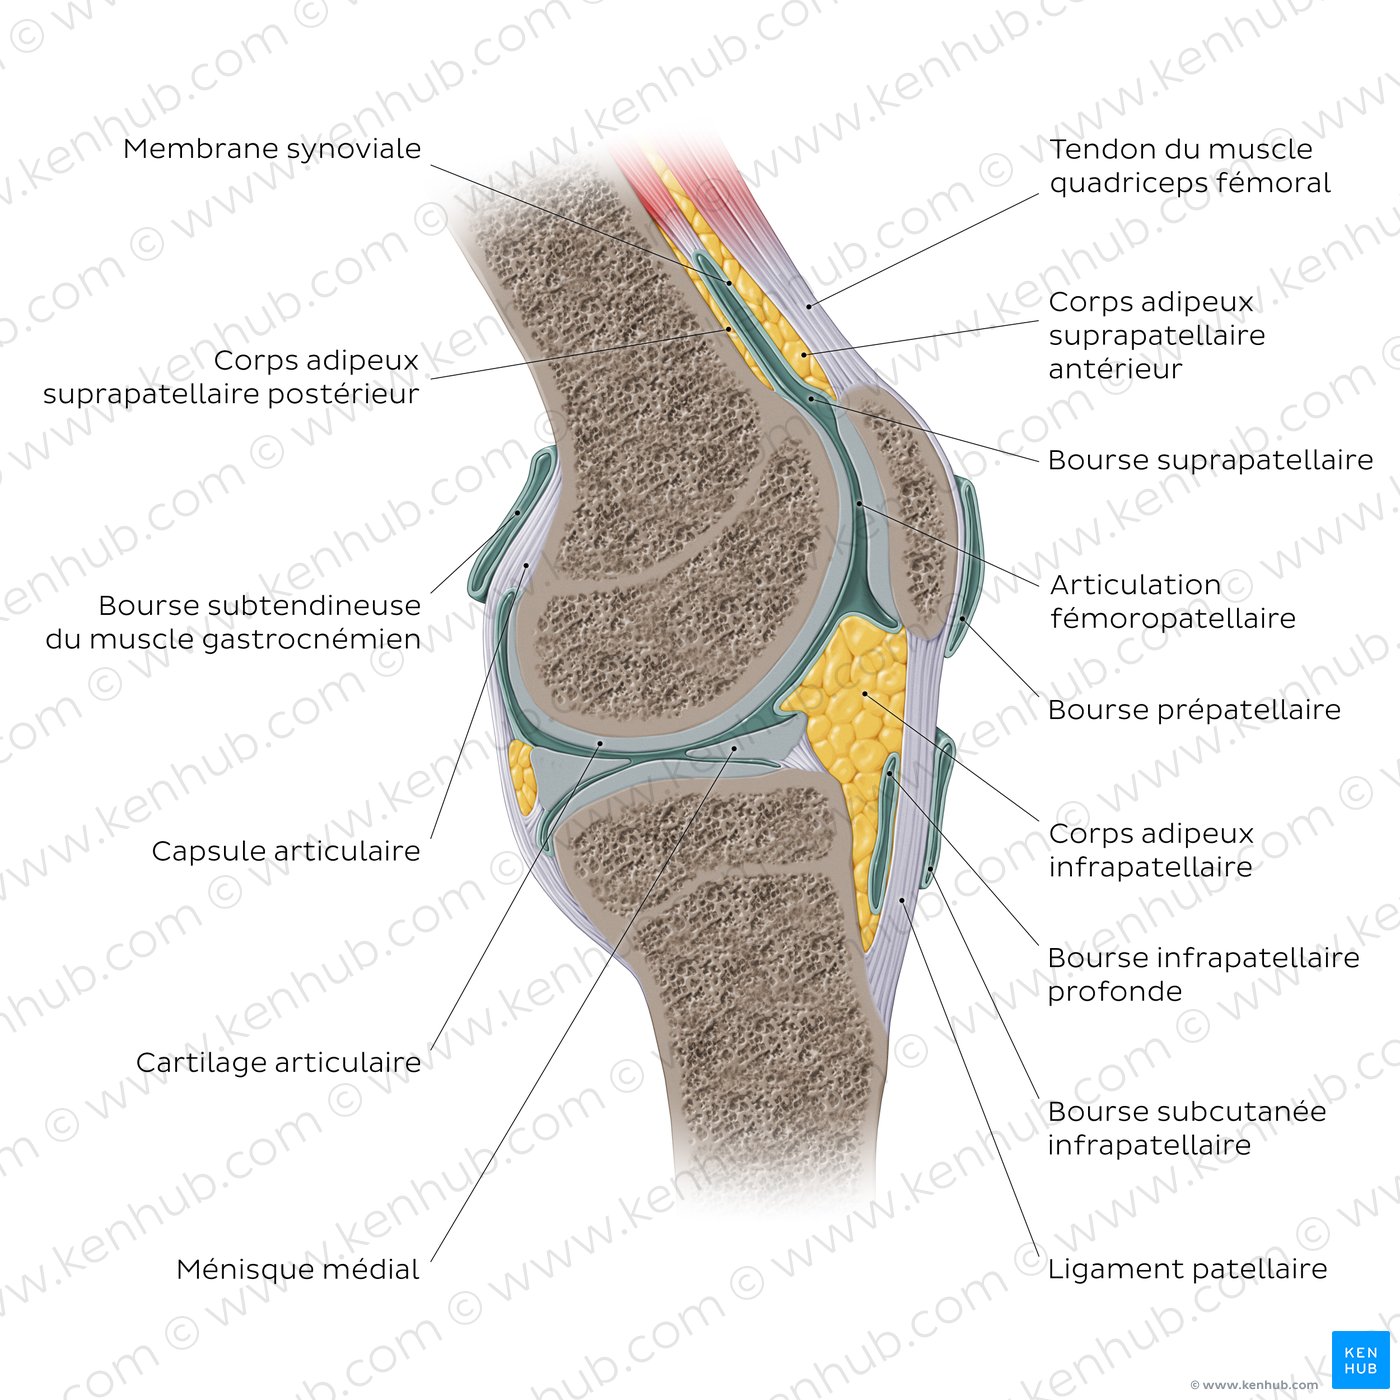 Anatomie de l’articulation du genou (vue sagittale)